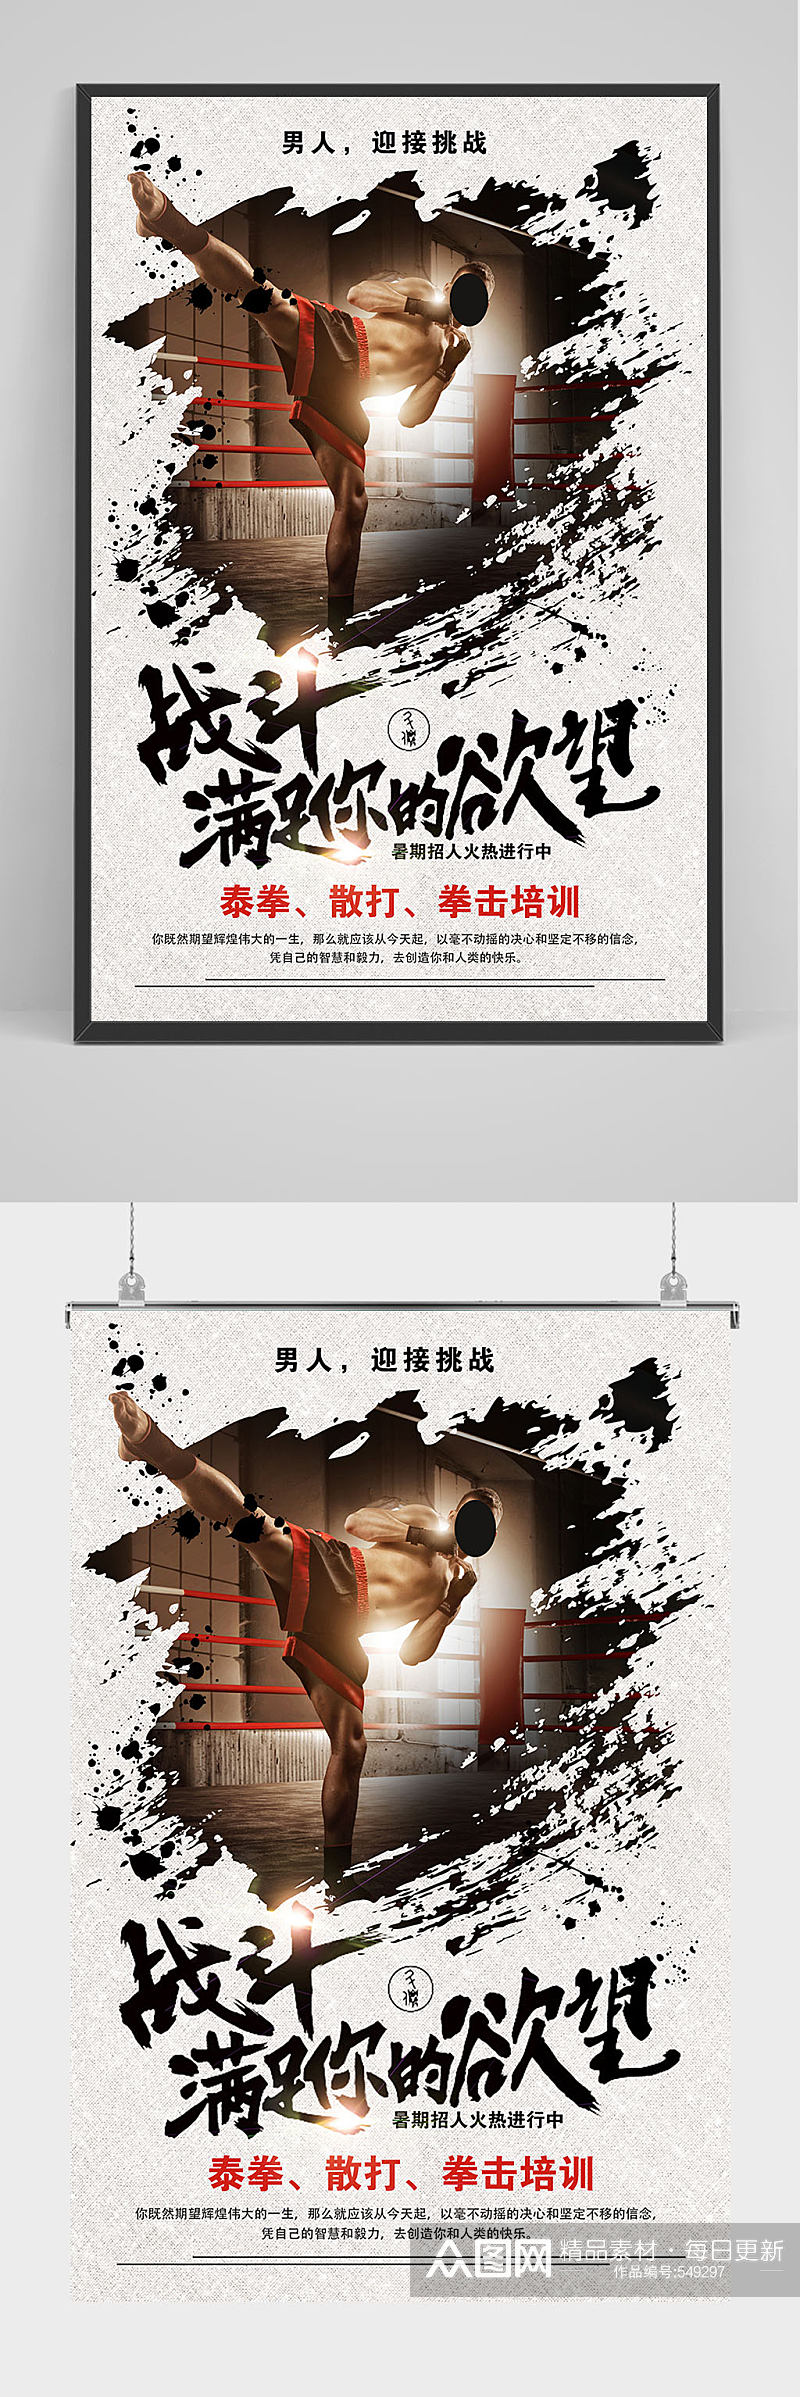 精品中国风拳击培训海报设计素材